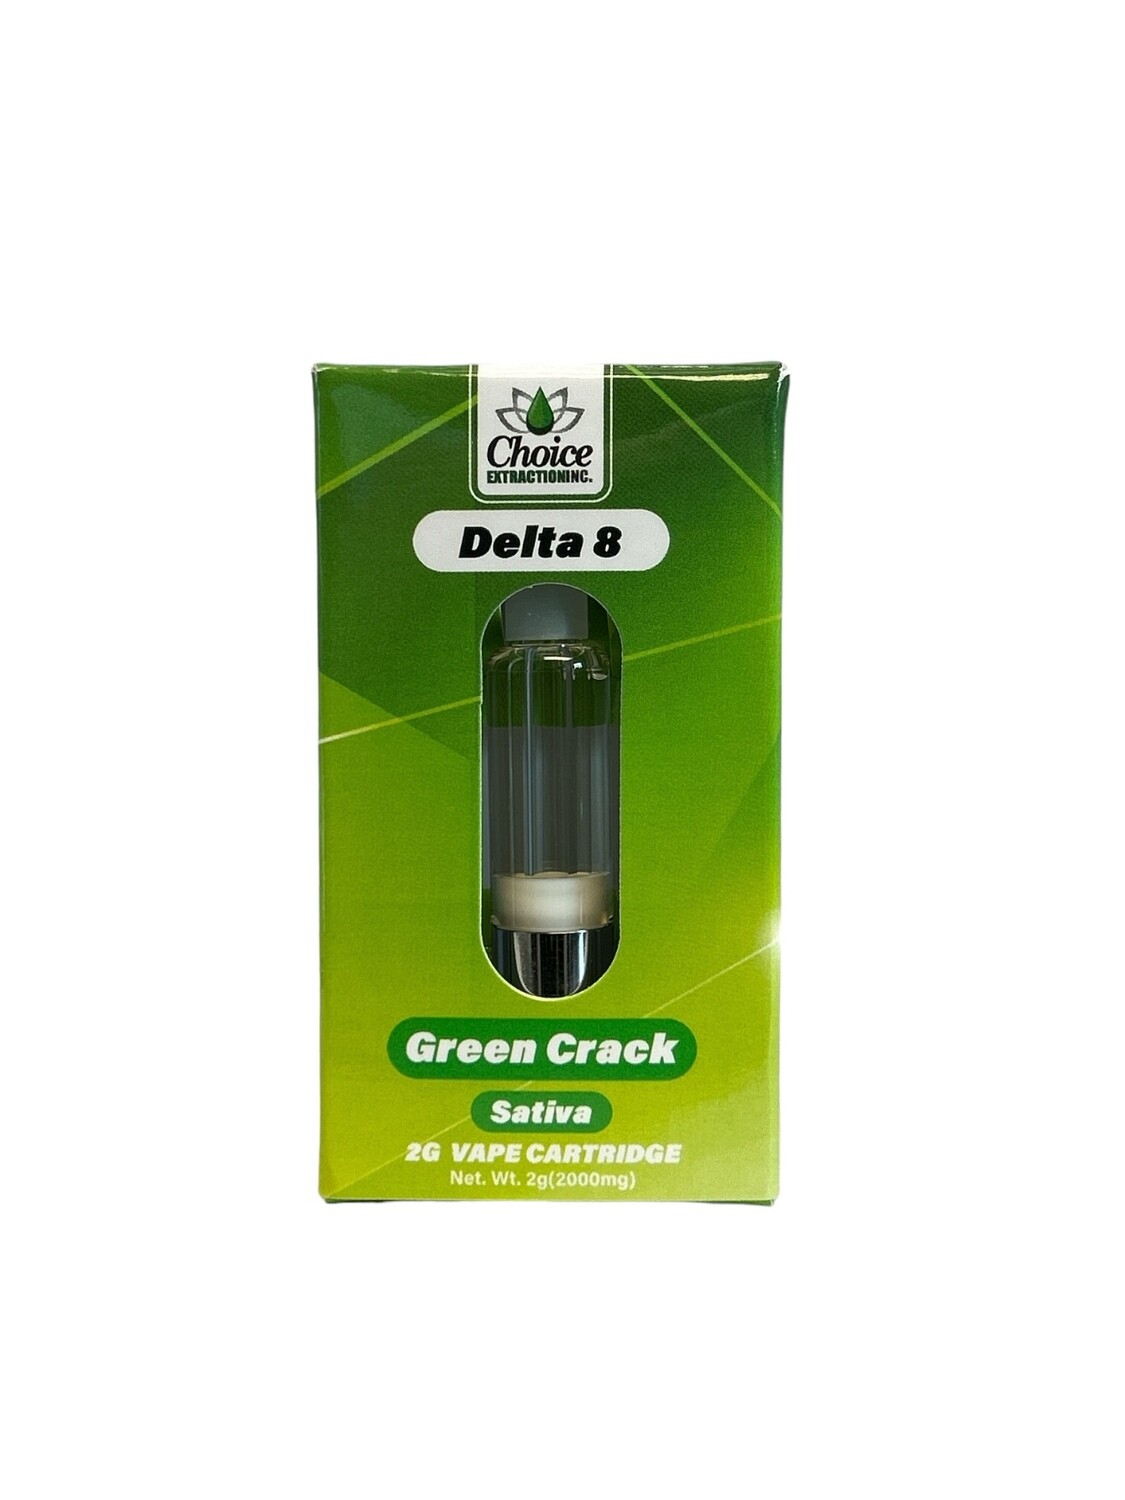 D8 Vape Cart - Green Crack 2mL - Sativa